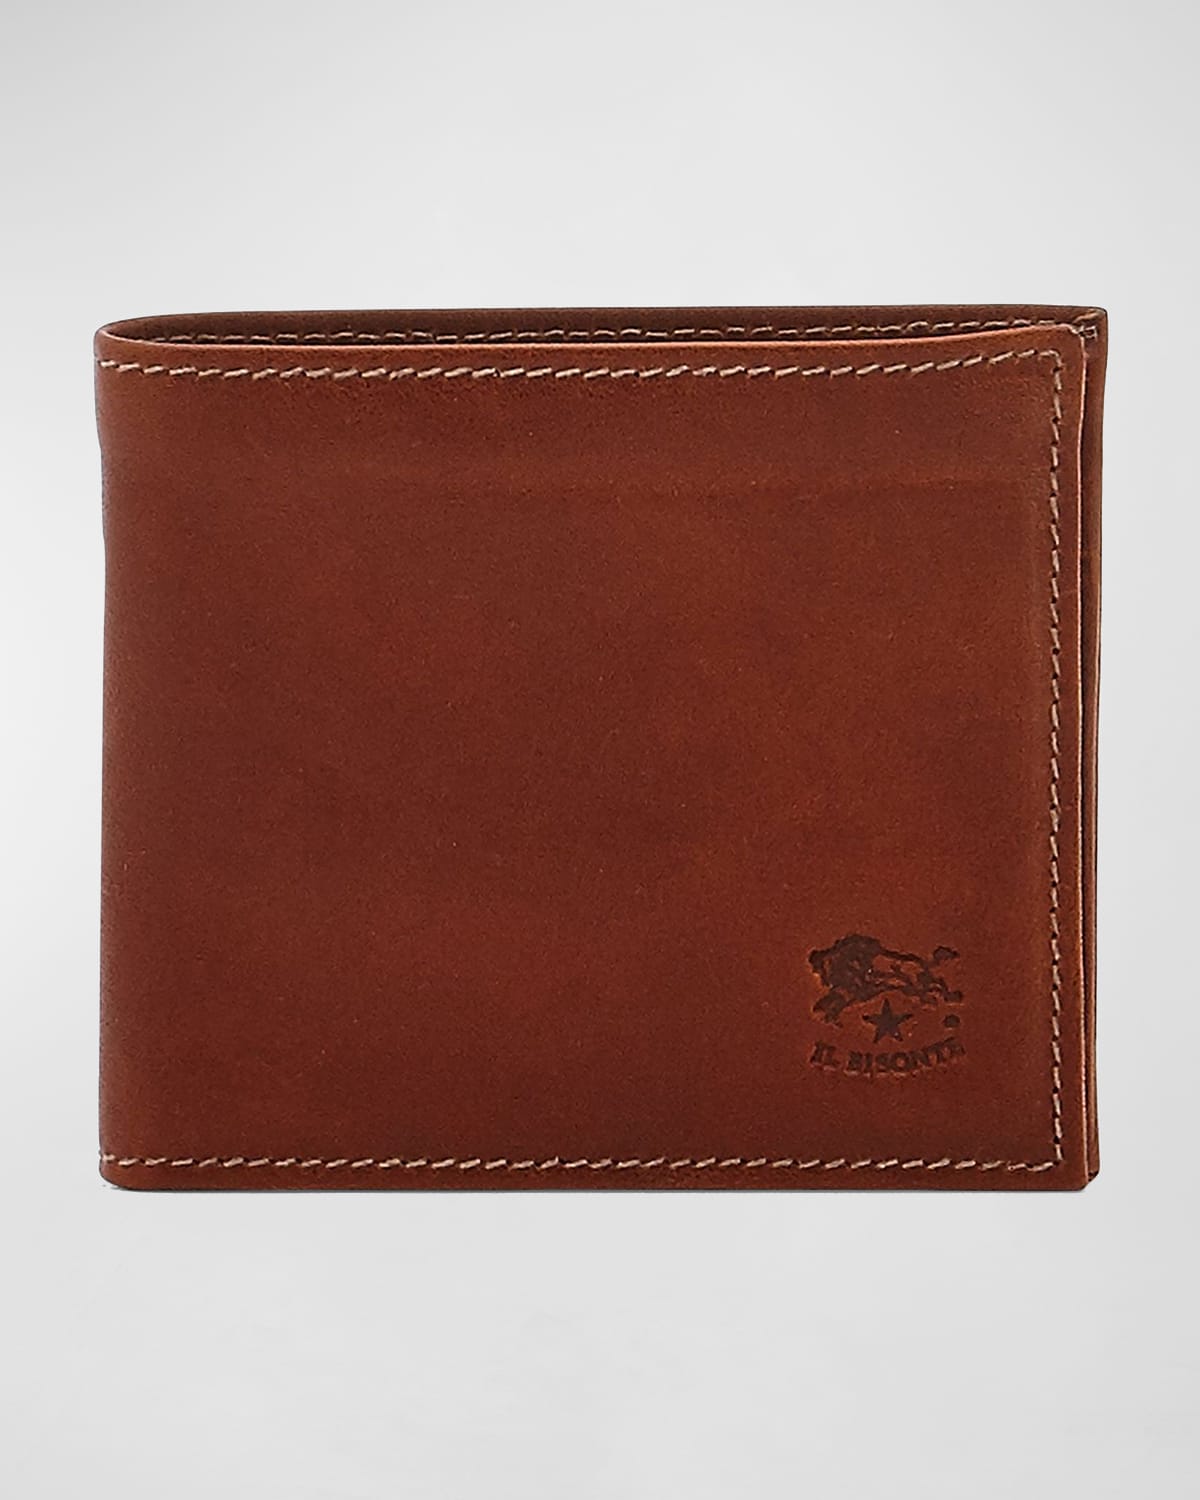 Men's Vintage Leather Wallet